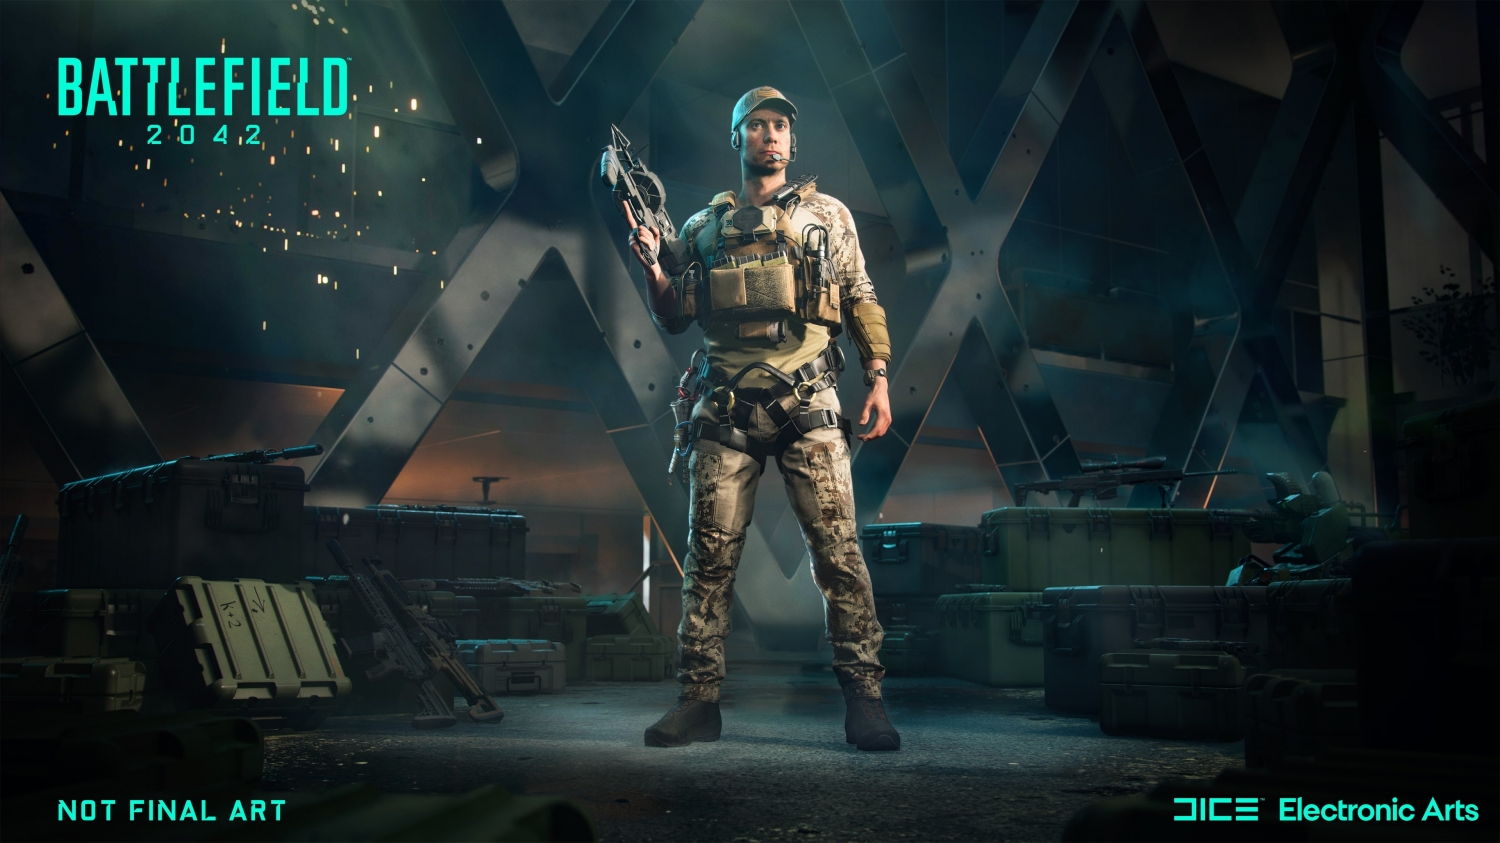 Battlefield grátis? Gameplay com Enlisted, free to play de PC, PS5 e Xbox  Series X/S - Ao vivo às 21h